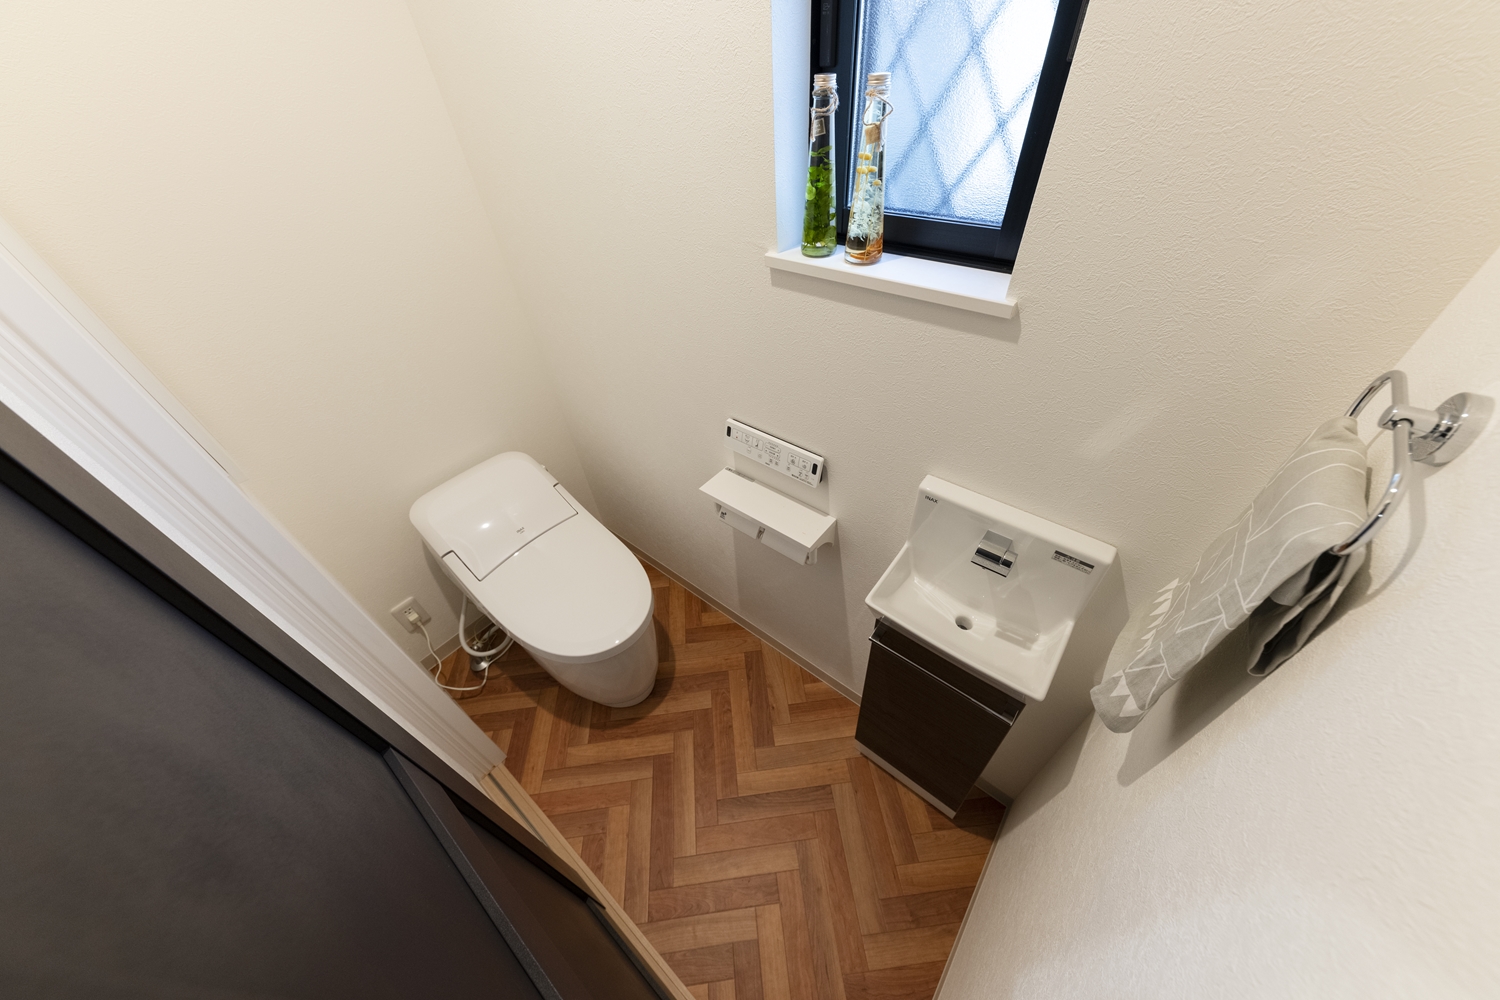 明るい木目デザインの床が目を惹く1階トイレ。